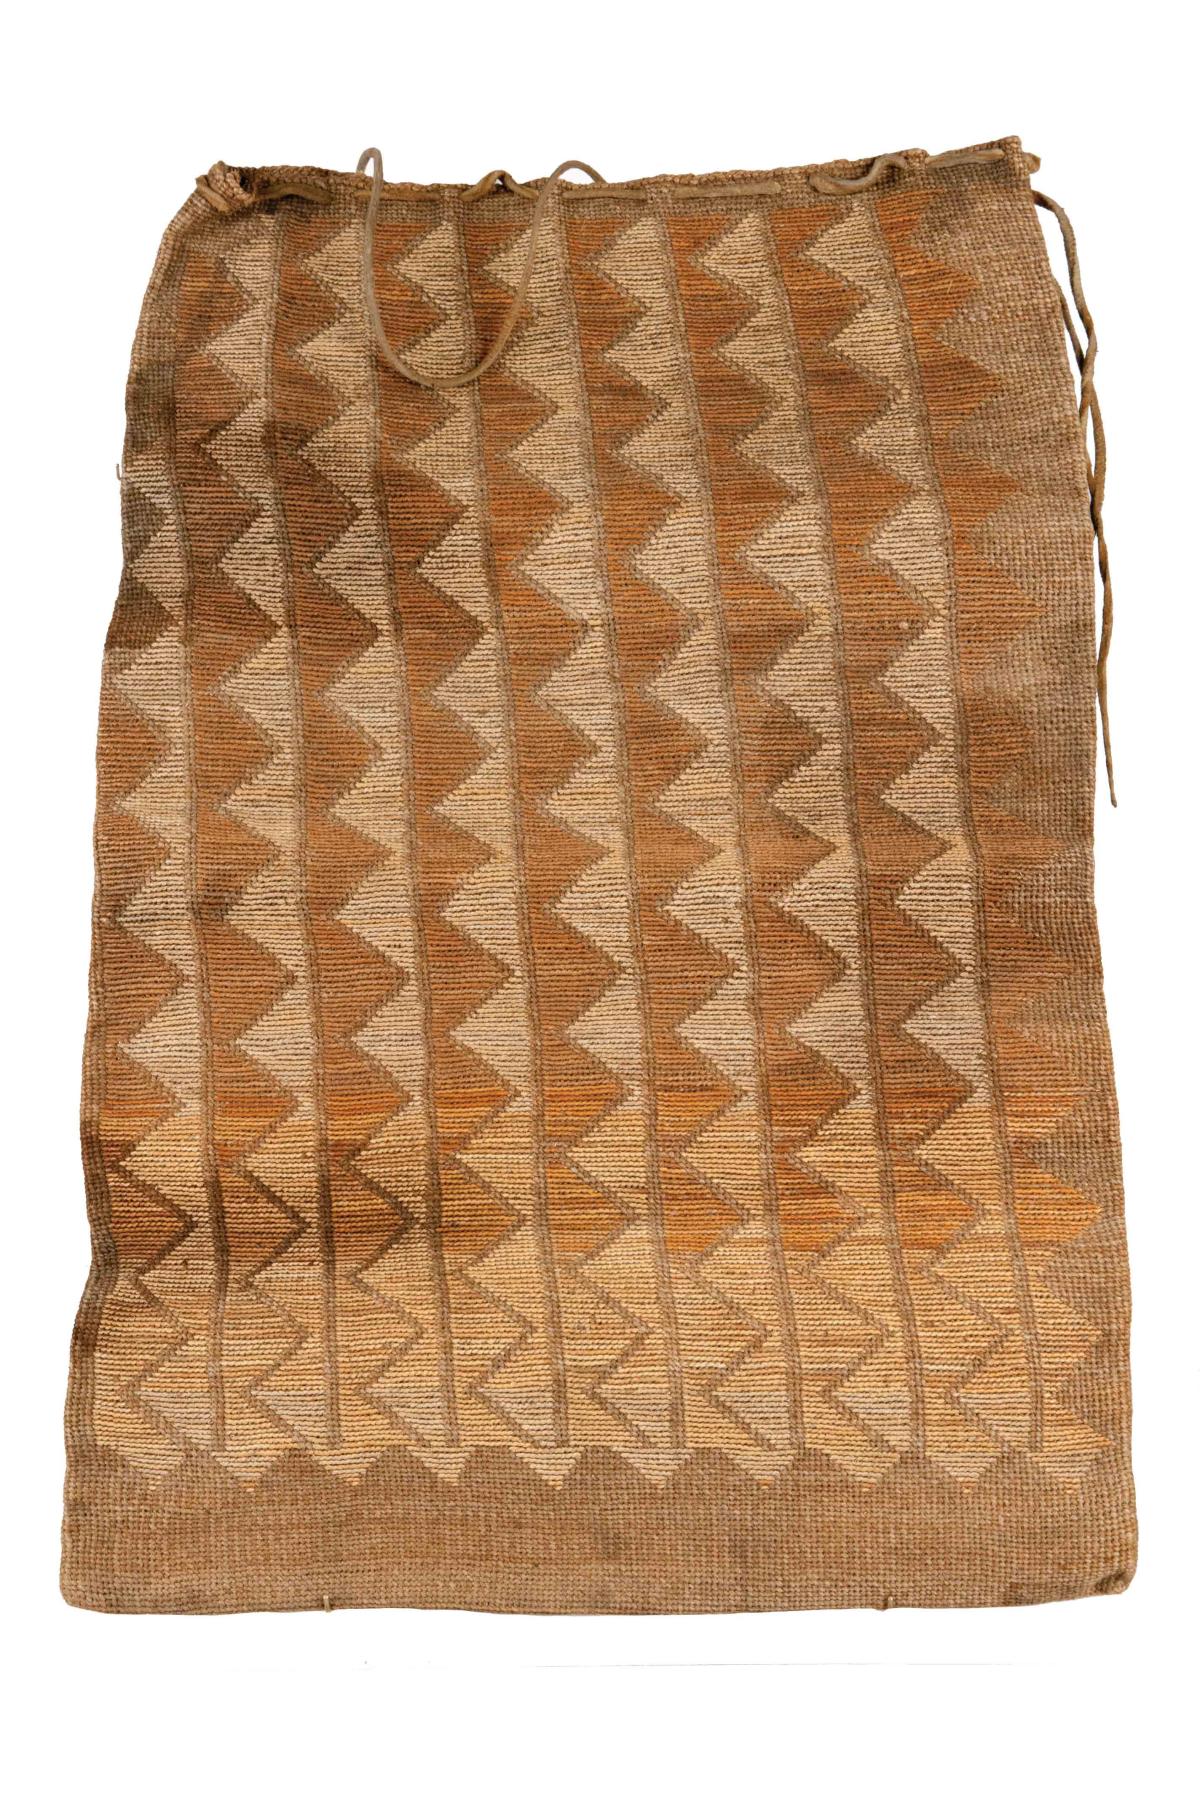 patterned, cornhusk bag